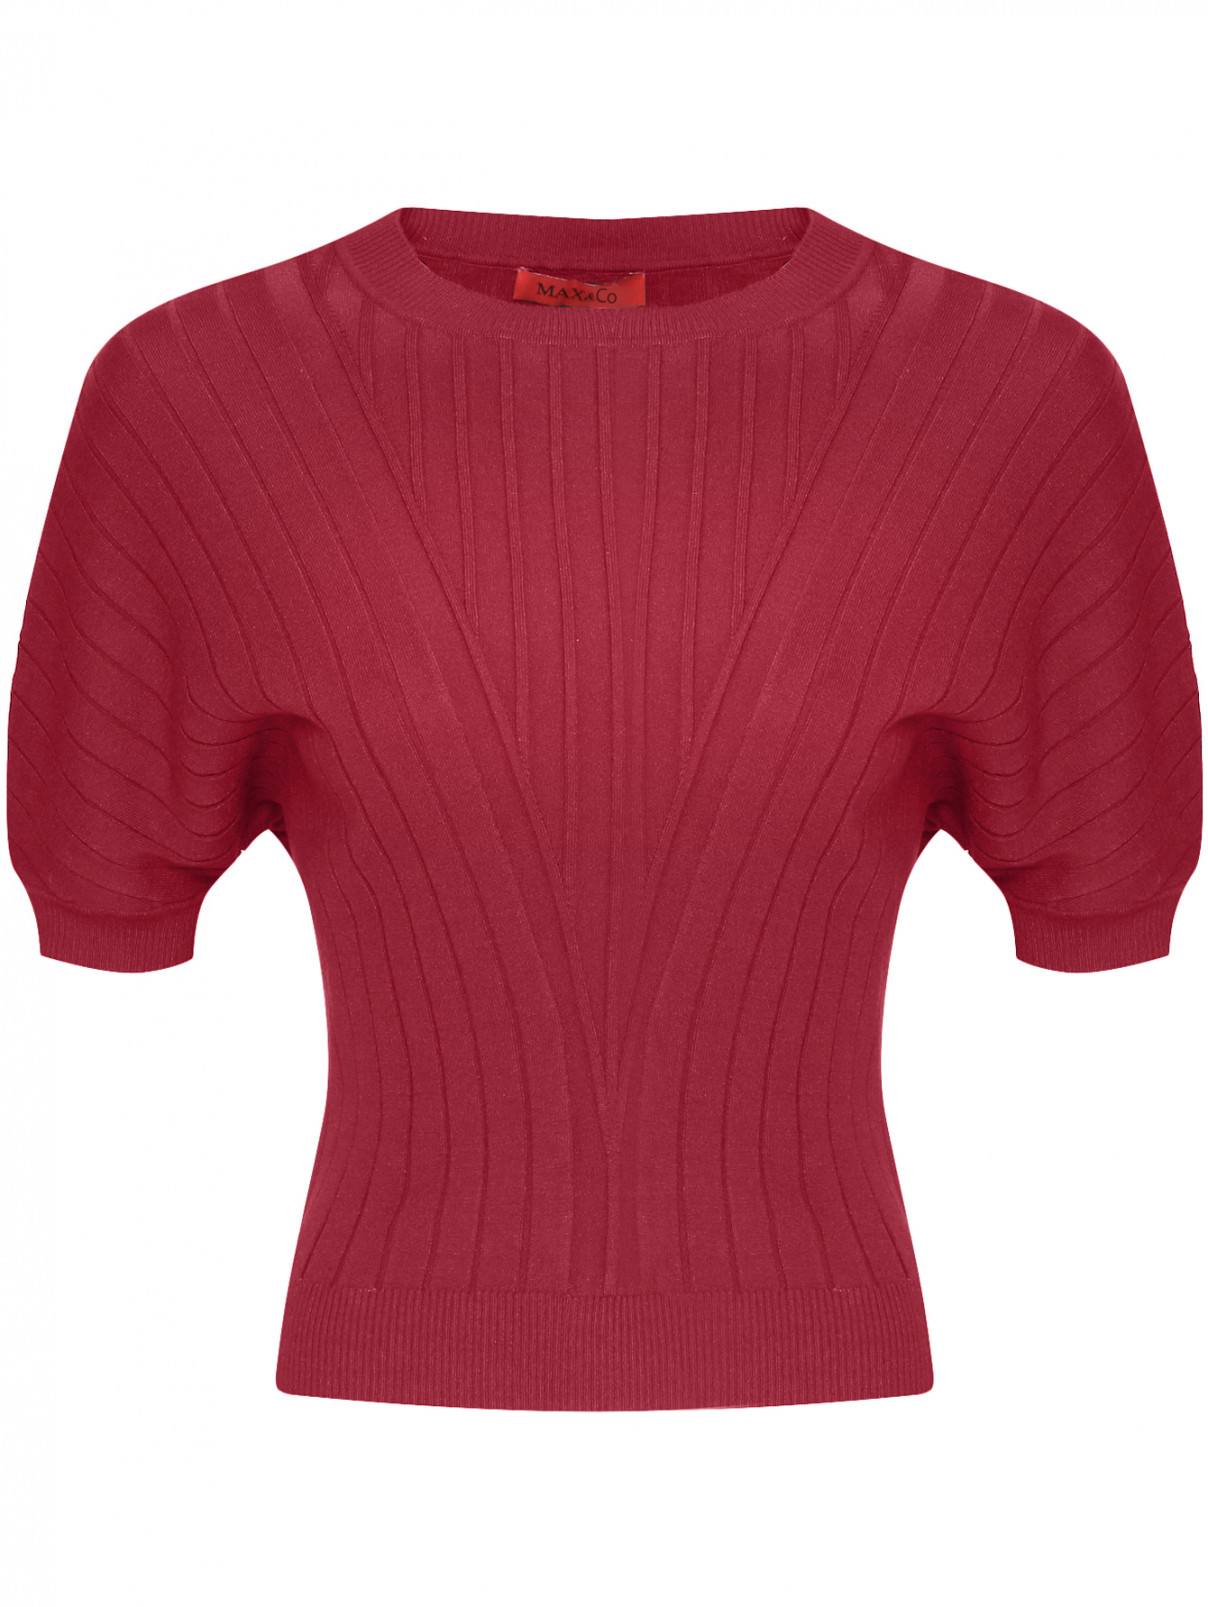 Джемпер с короткими рукавами Max&Co  –  Общий вид  – Цвет:  Красный